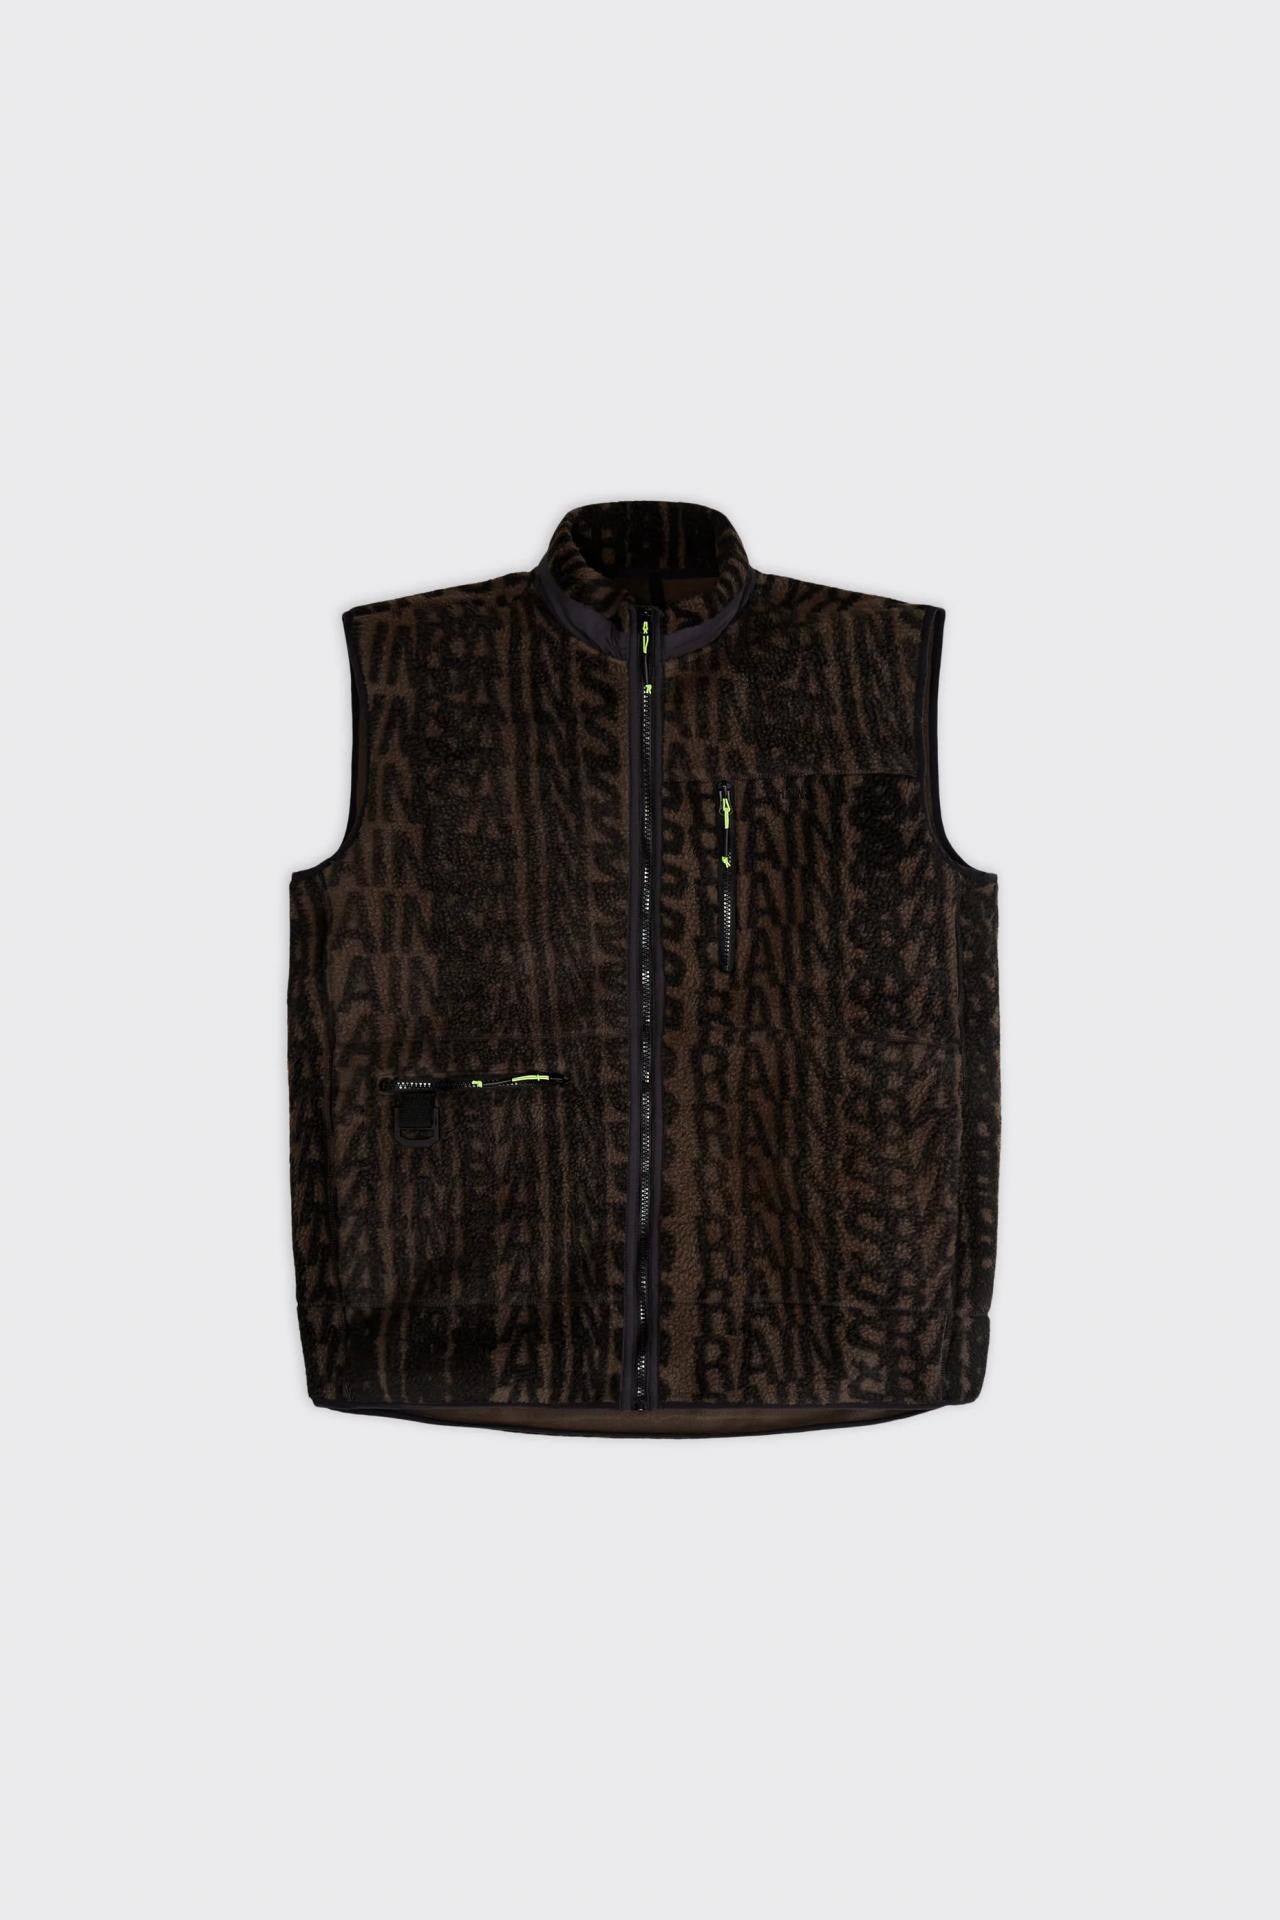 Rains Heavy Fleece Vest Wood-Black Monogram XS